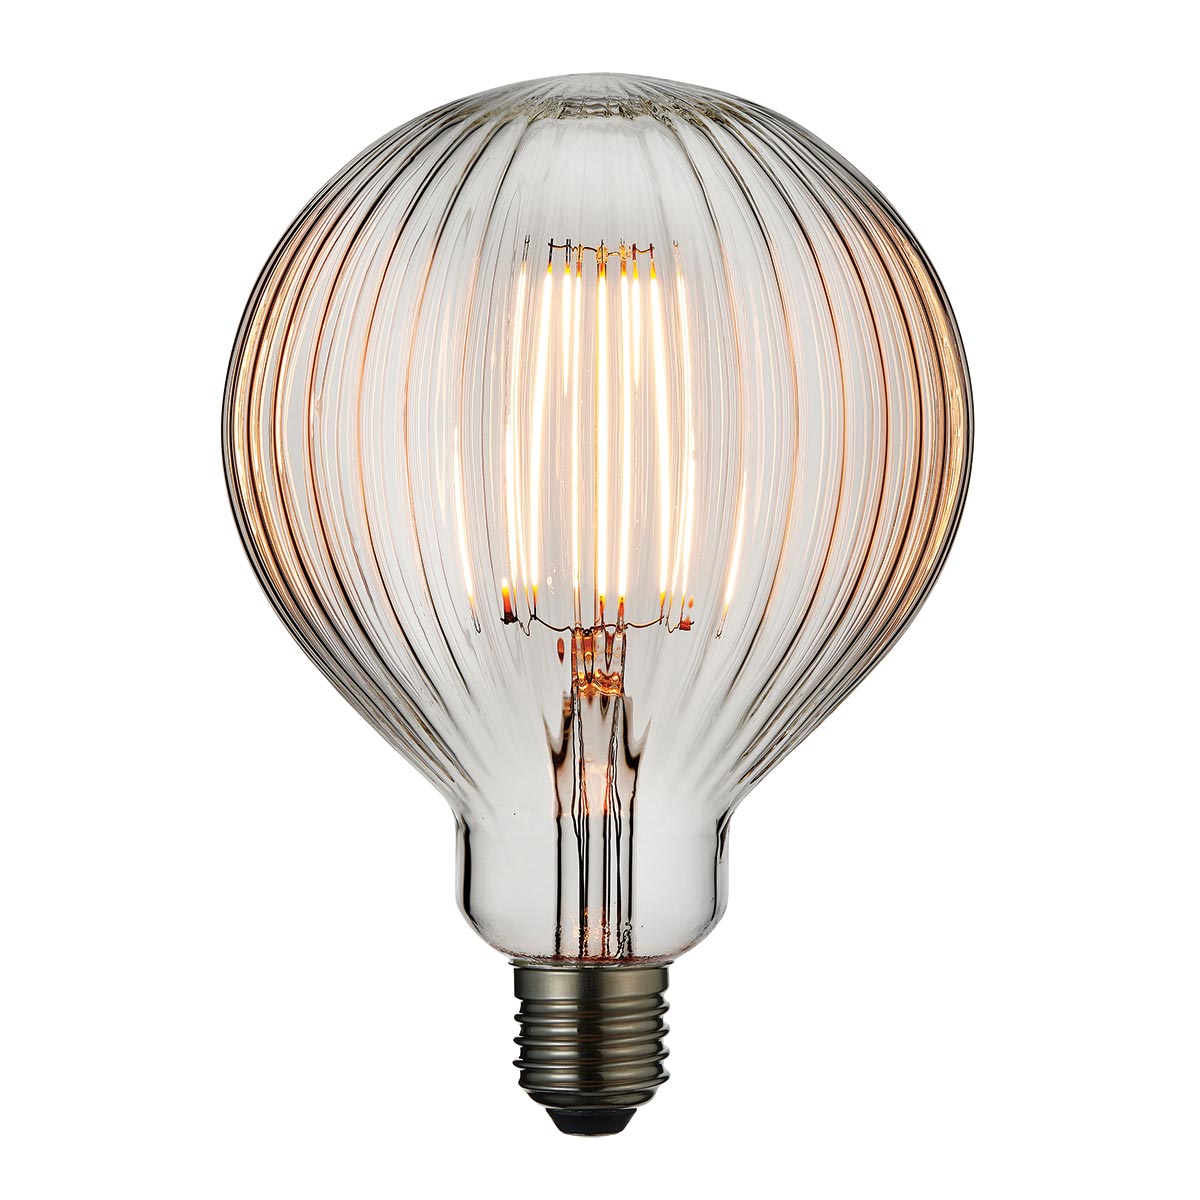 Ribb 125mm 4w LED Clear Globe E27 Light Bulb 450lm